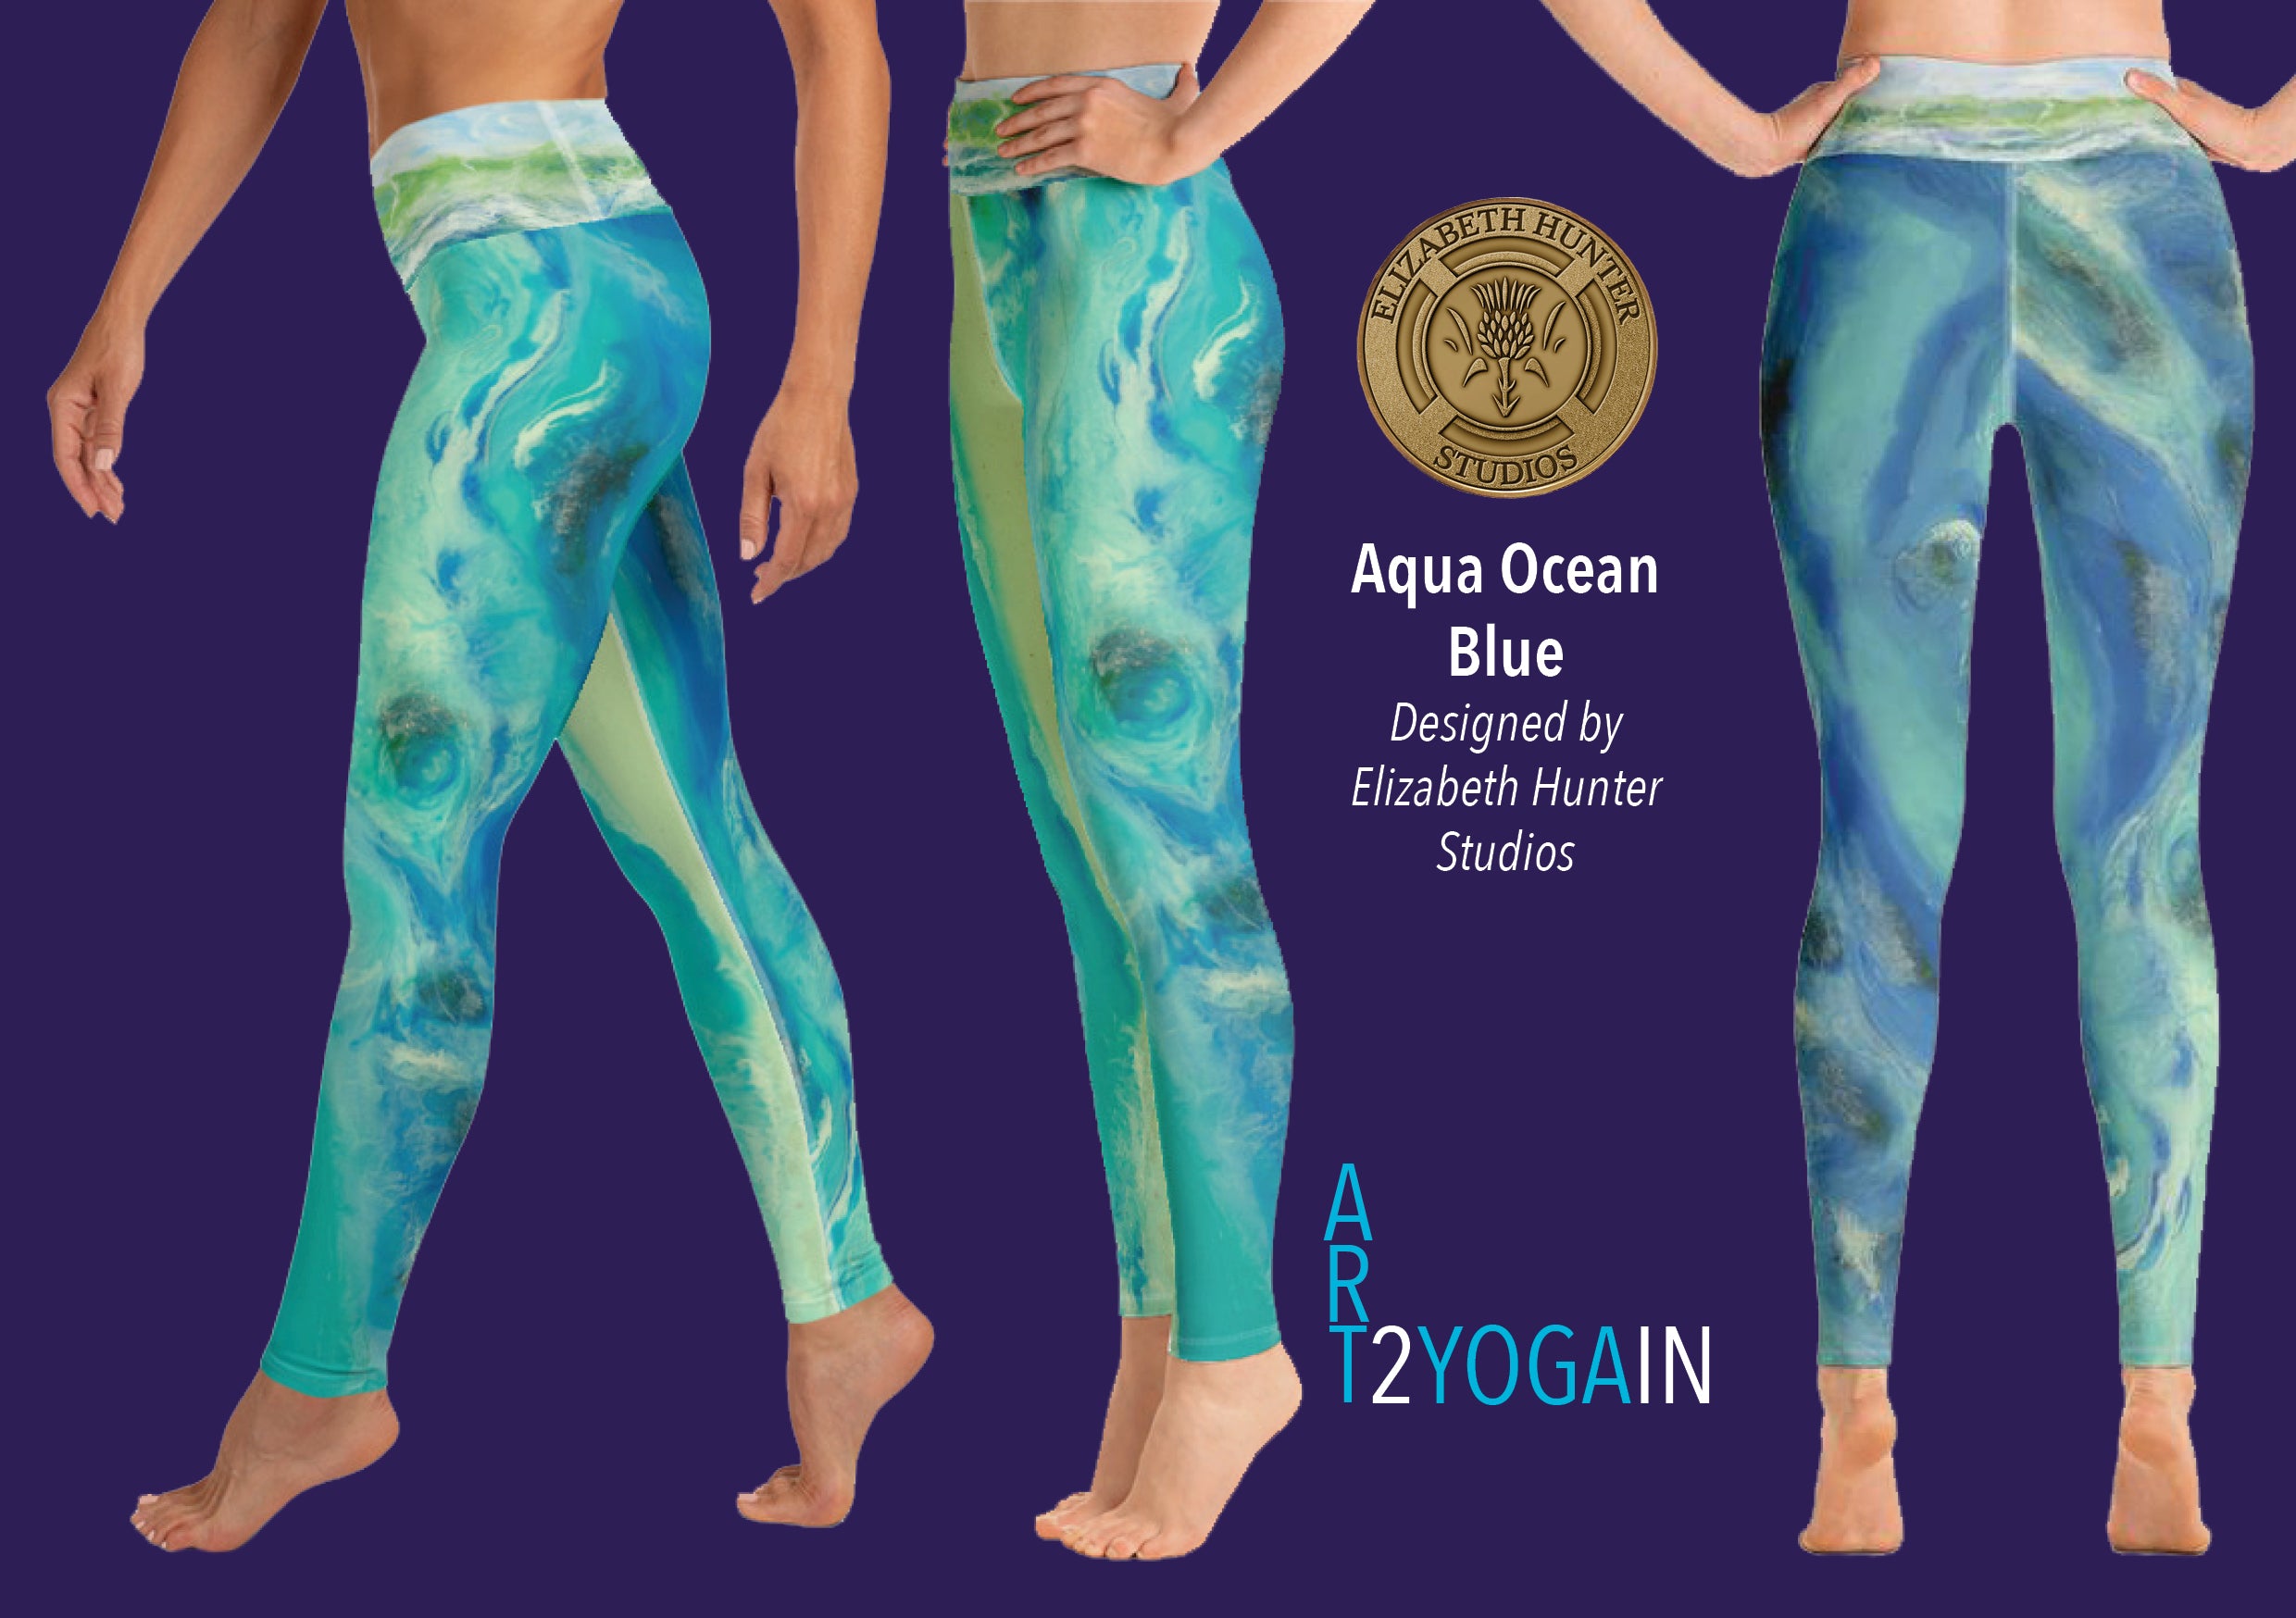 ZEN Aqua Ocean Blue Elizabeth Hunter Studios Yoga Leggings